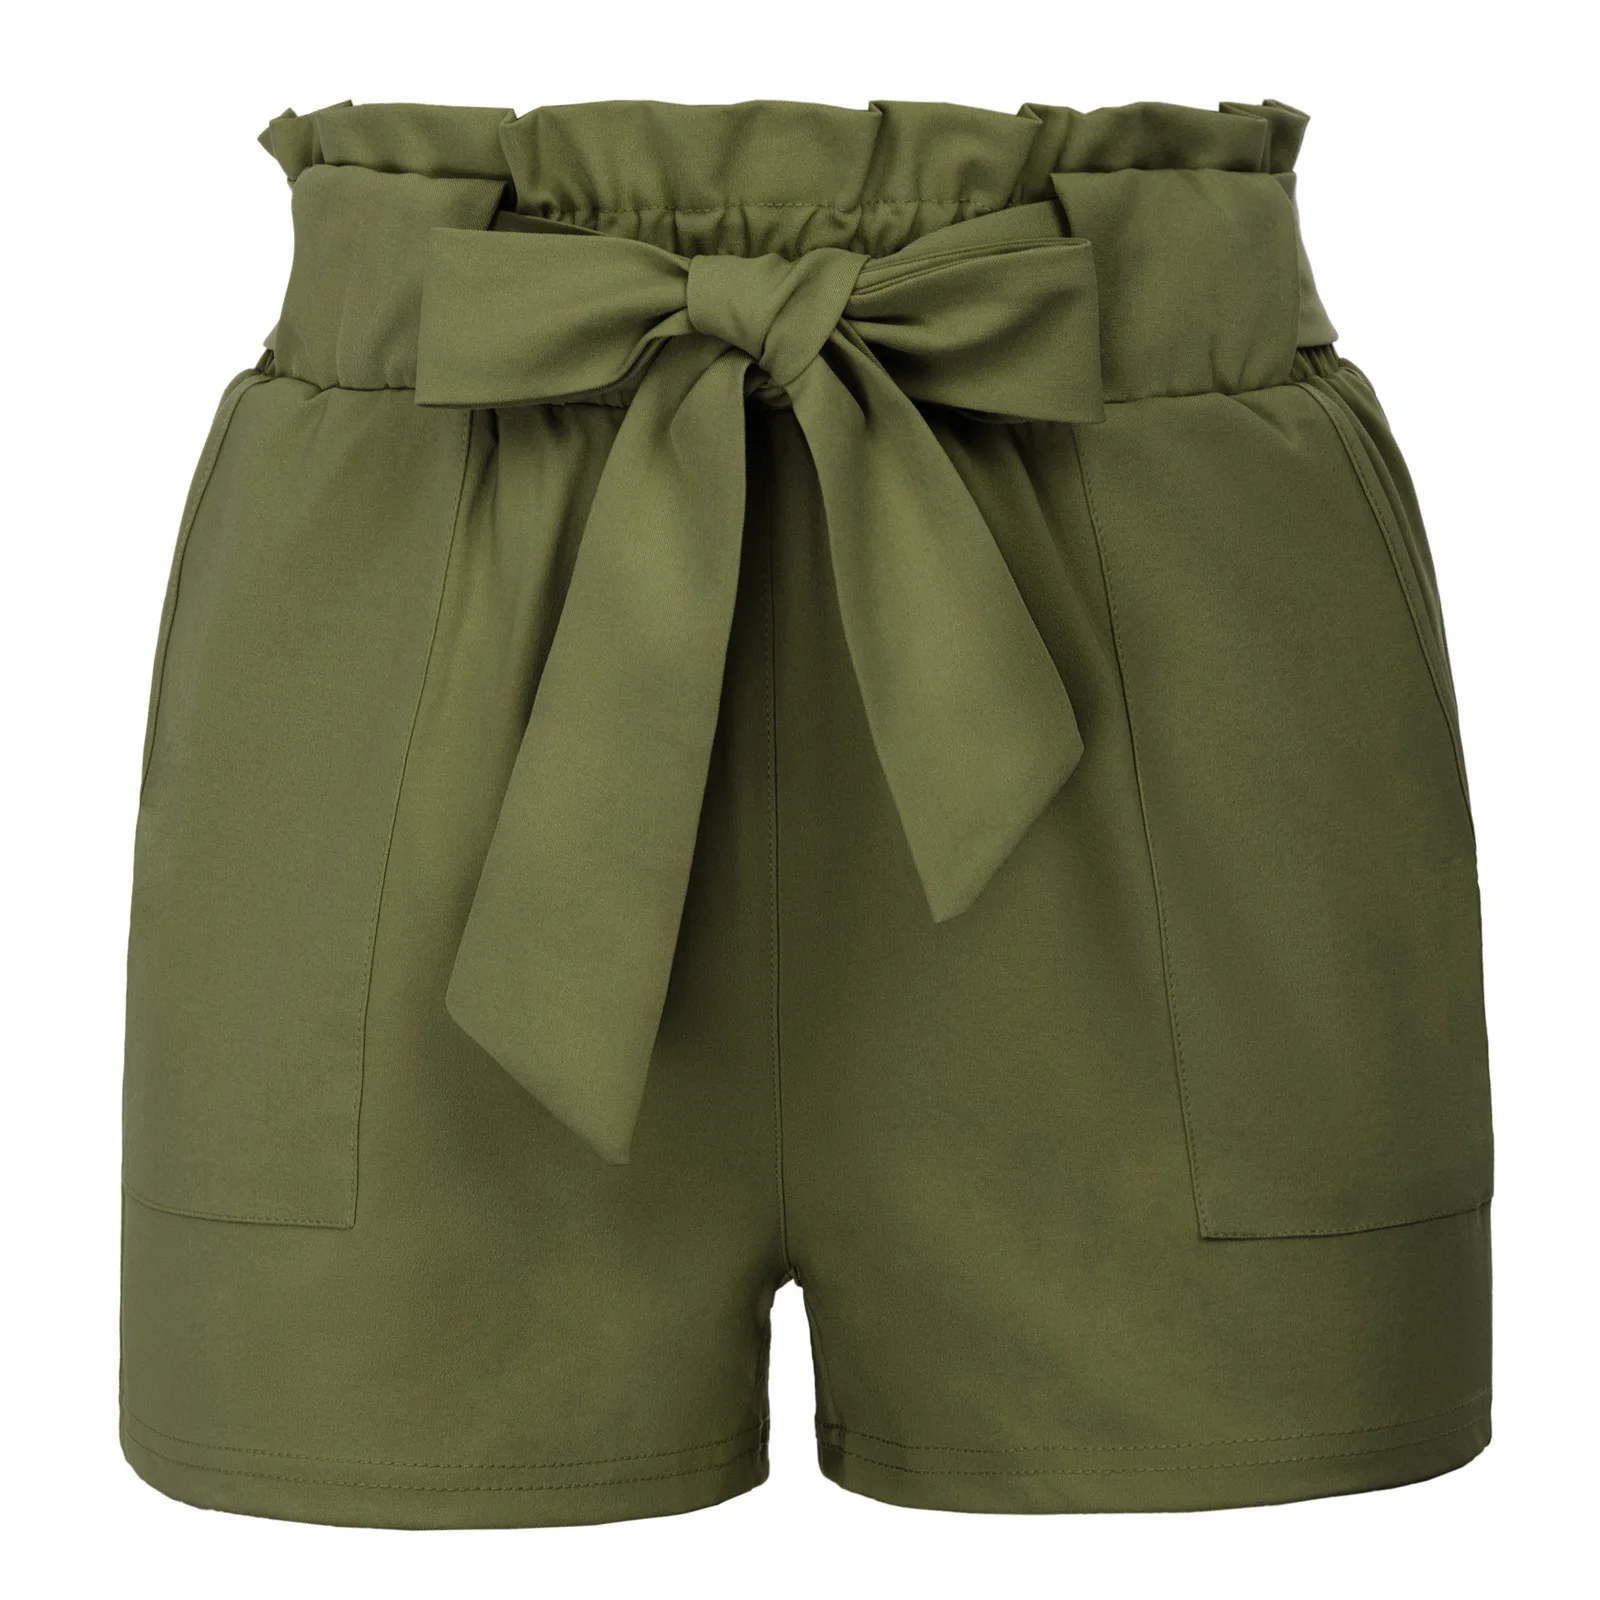 Grace Karin Женские повседневные эластичные шорты с высокой талией Мини шорты Популярные летние стильные свободные пляжные шорты с поясом - Цвет: Army Green